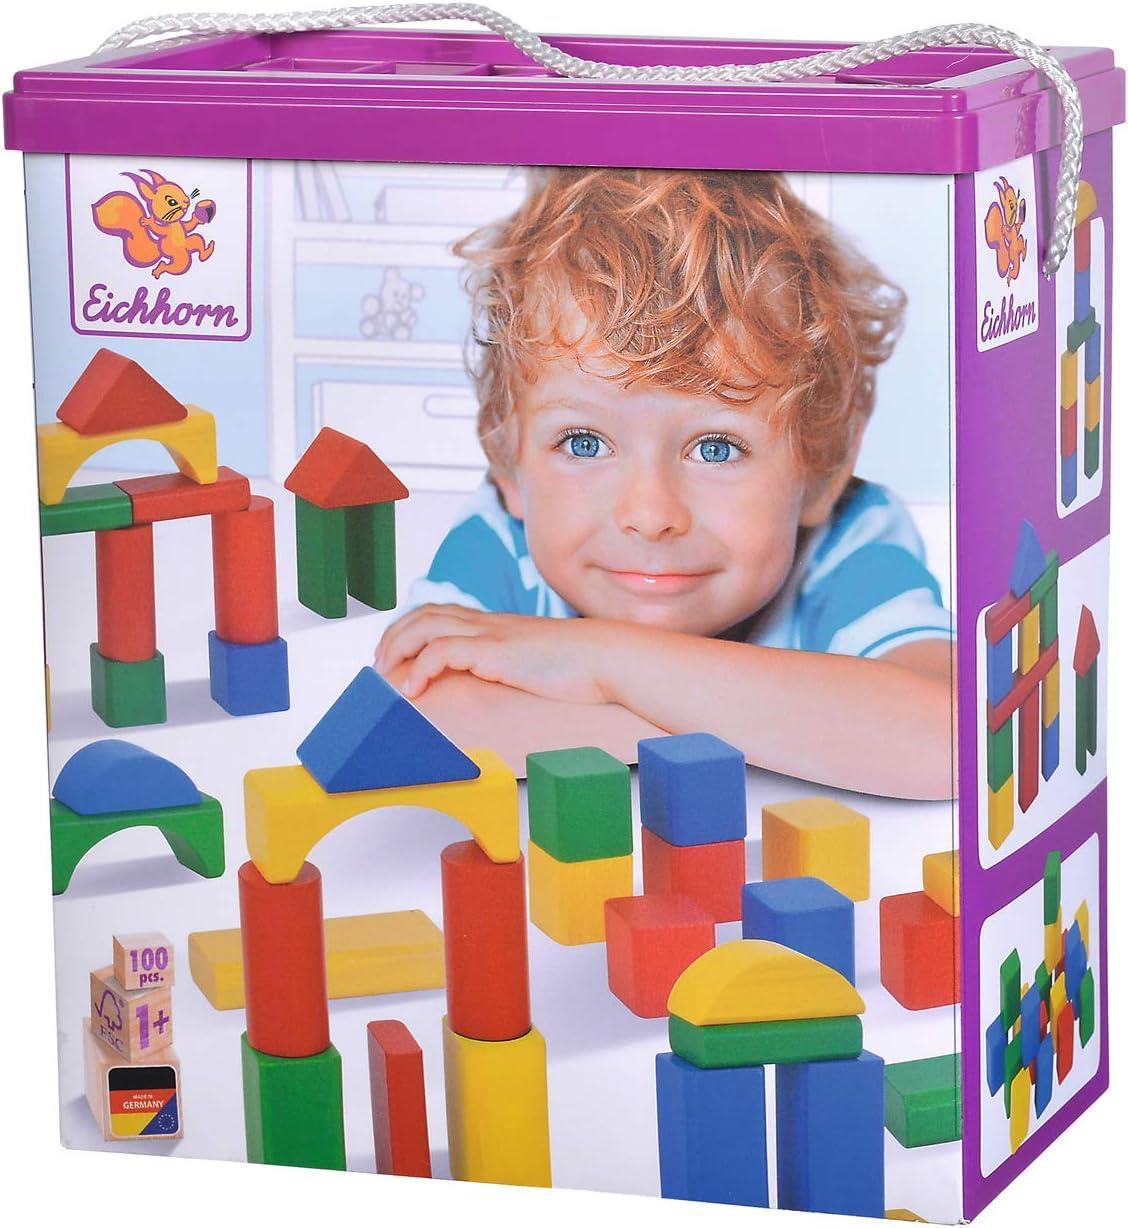 Simba Eichhorn Renkli Ahşap Bloklar 100010171 | Toysall